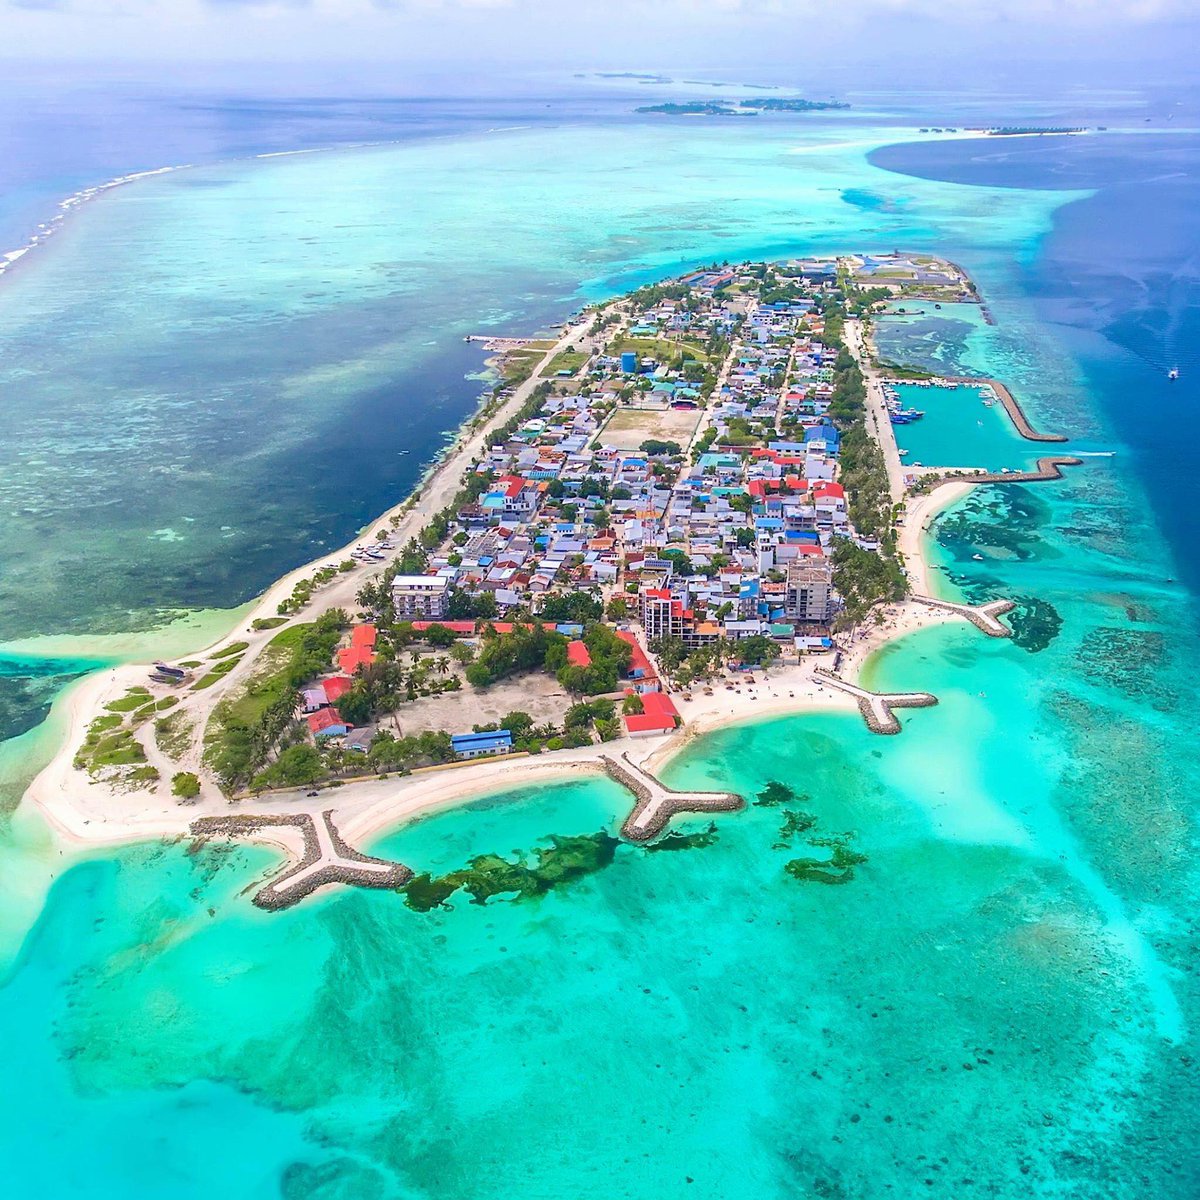 #maafushi #maldives #budgetholiday #holiday #travel #vacation #budgetrooms #budgetbeds #sunnyside #snorkeling #watersports #scubadiving #sportsfishing

seasunexcursion.com